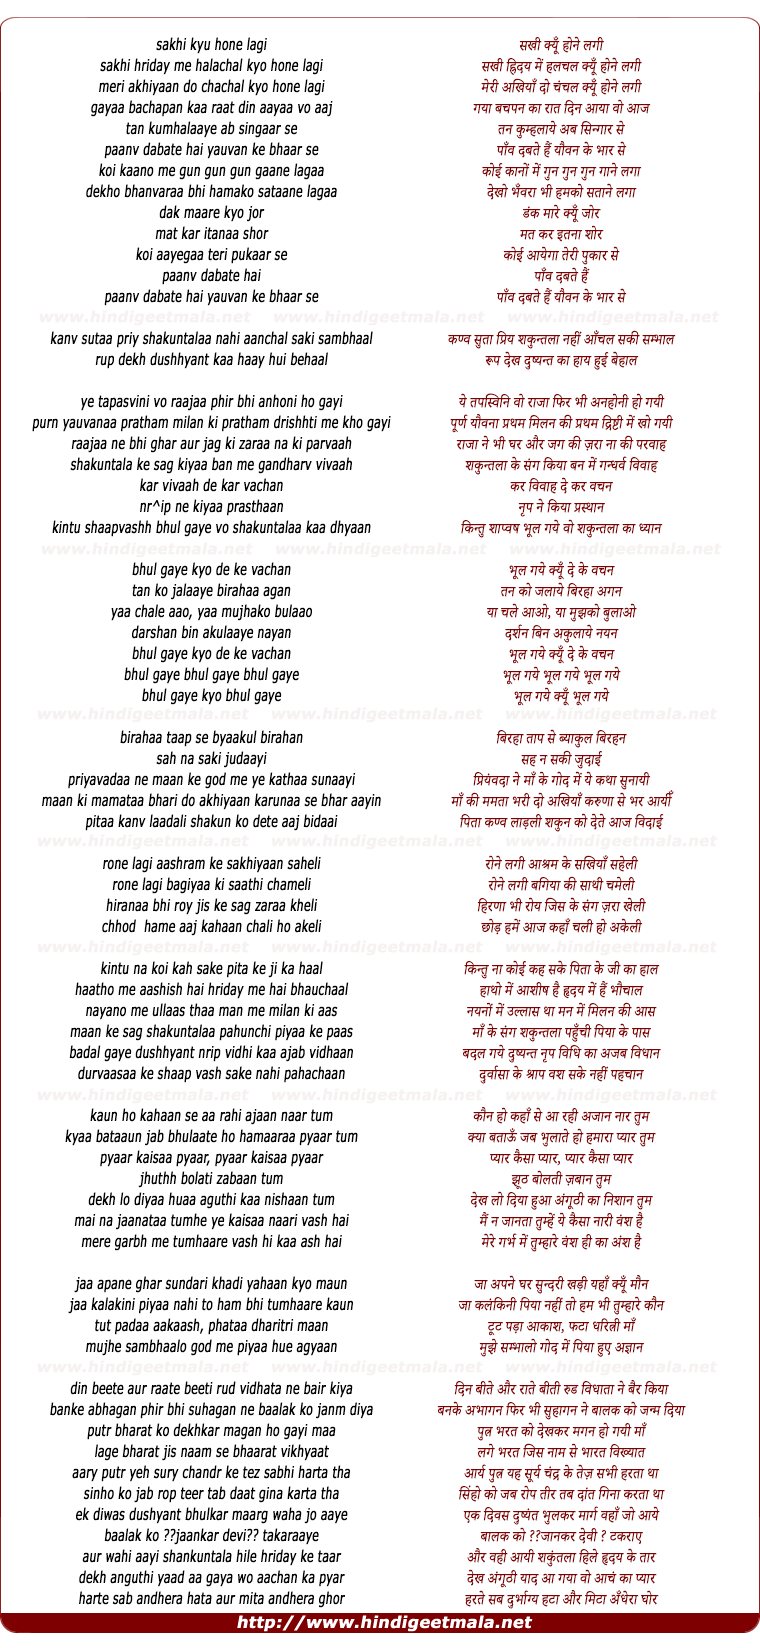 lyrics of song Pranay Virah Aur Milan Ki, Abhigyaan Shaakuntal